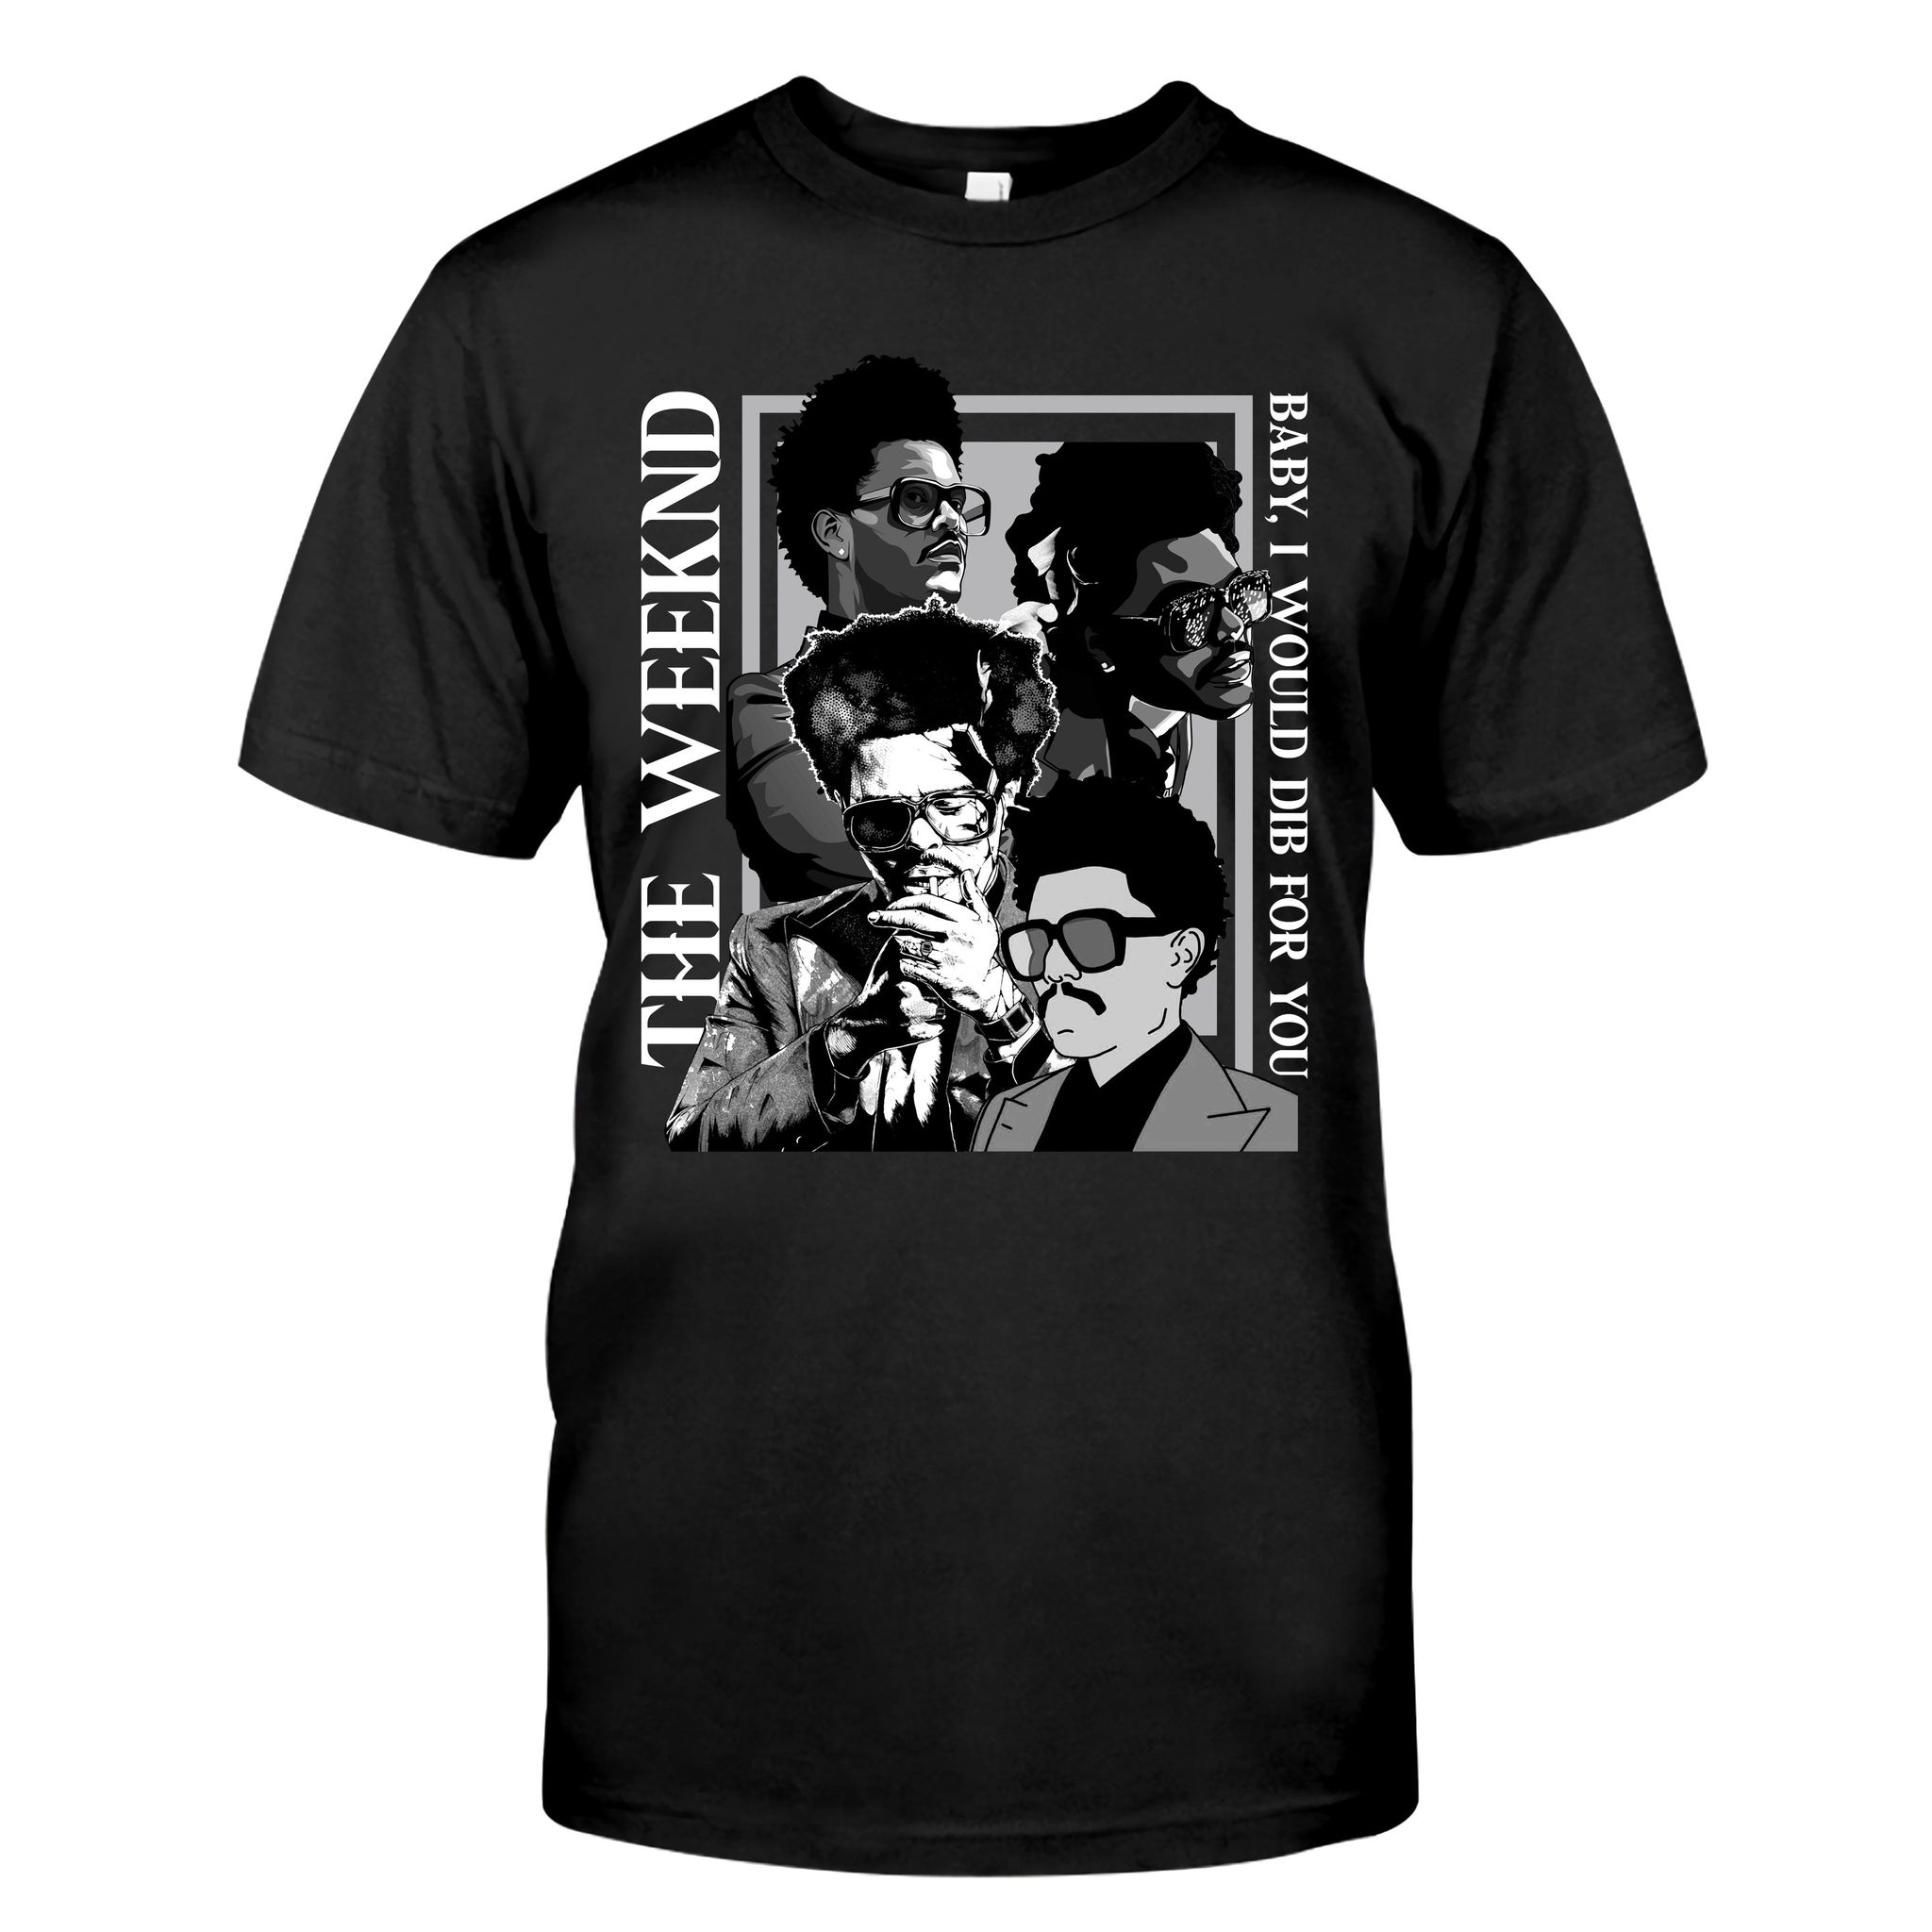 Vintage Weeknd T-Shirt, The Weekend T-Shirt, Hip-Hop Music Shirt, Starboy After H0urs Album tee, Weeknd Merch T-Shirt Black